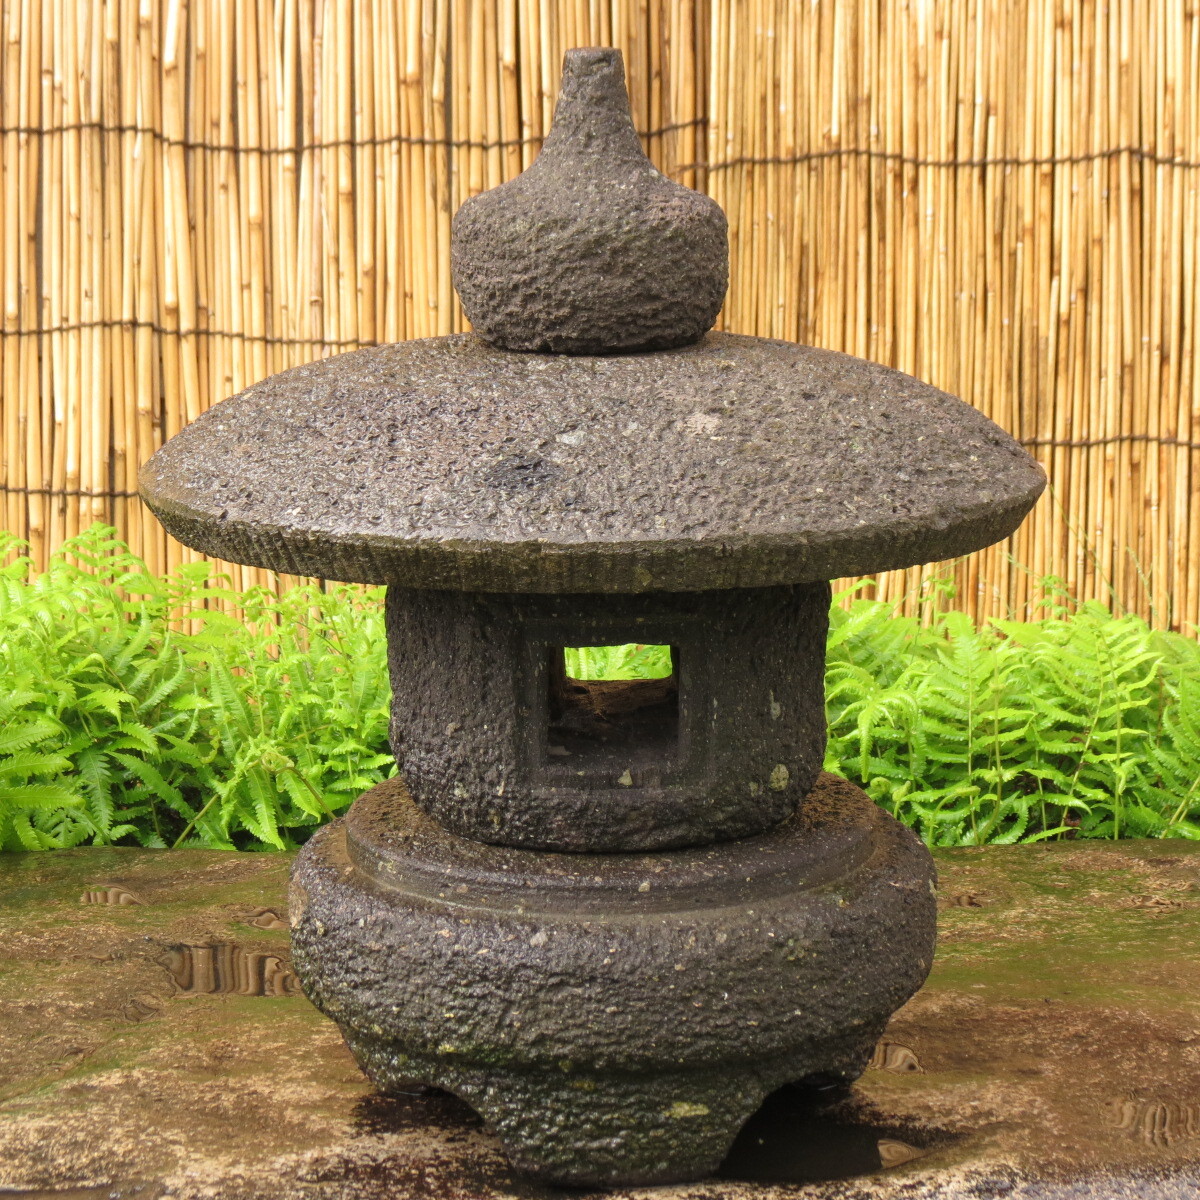  камень лампа . высота 50.3cm масса 32kg шар рука type Kyushu производство натуральный камень 